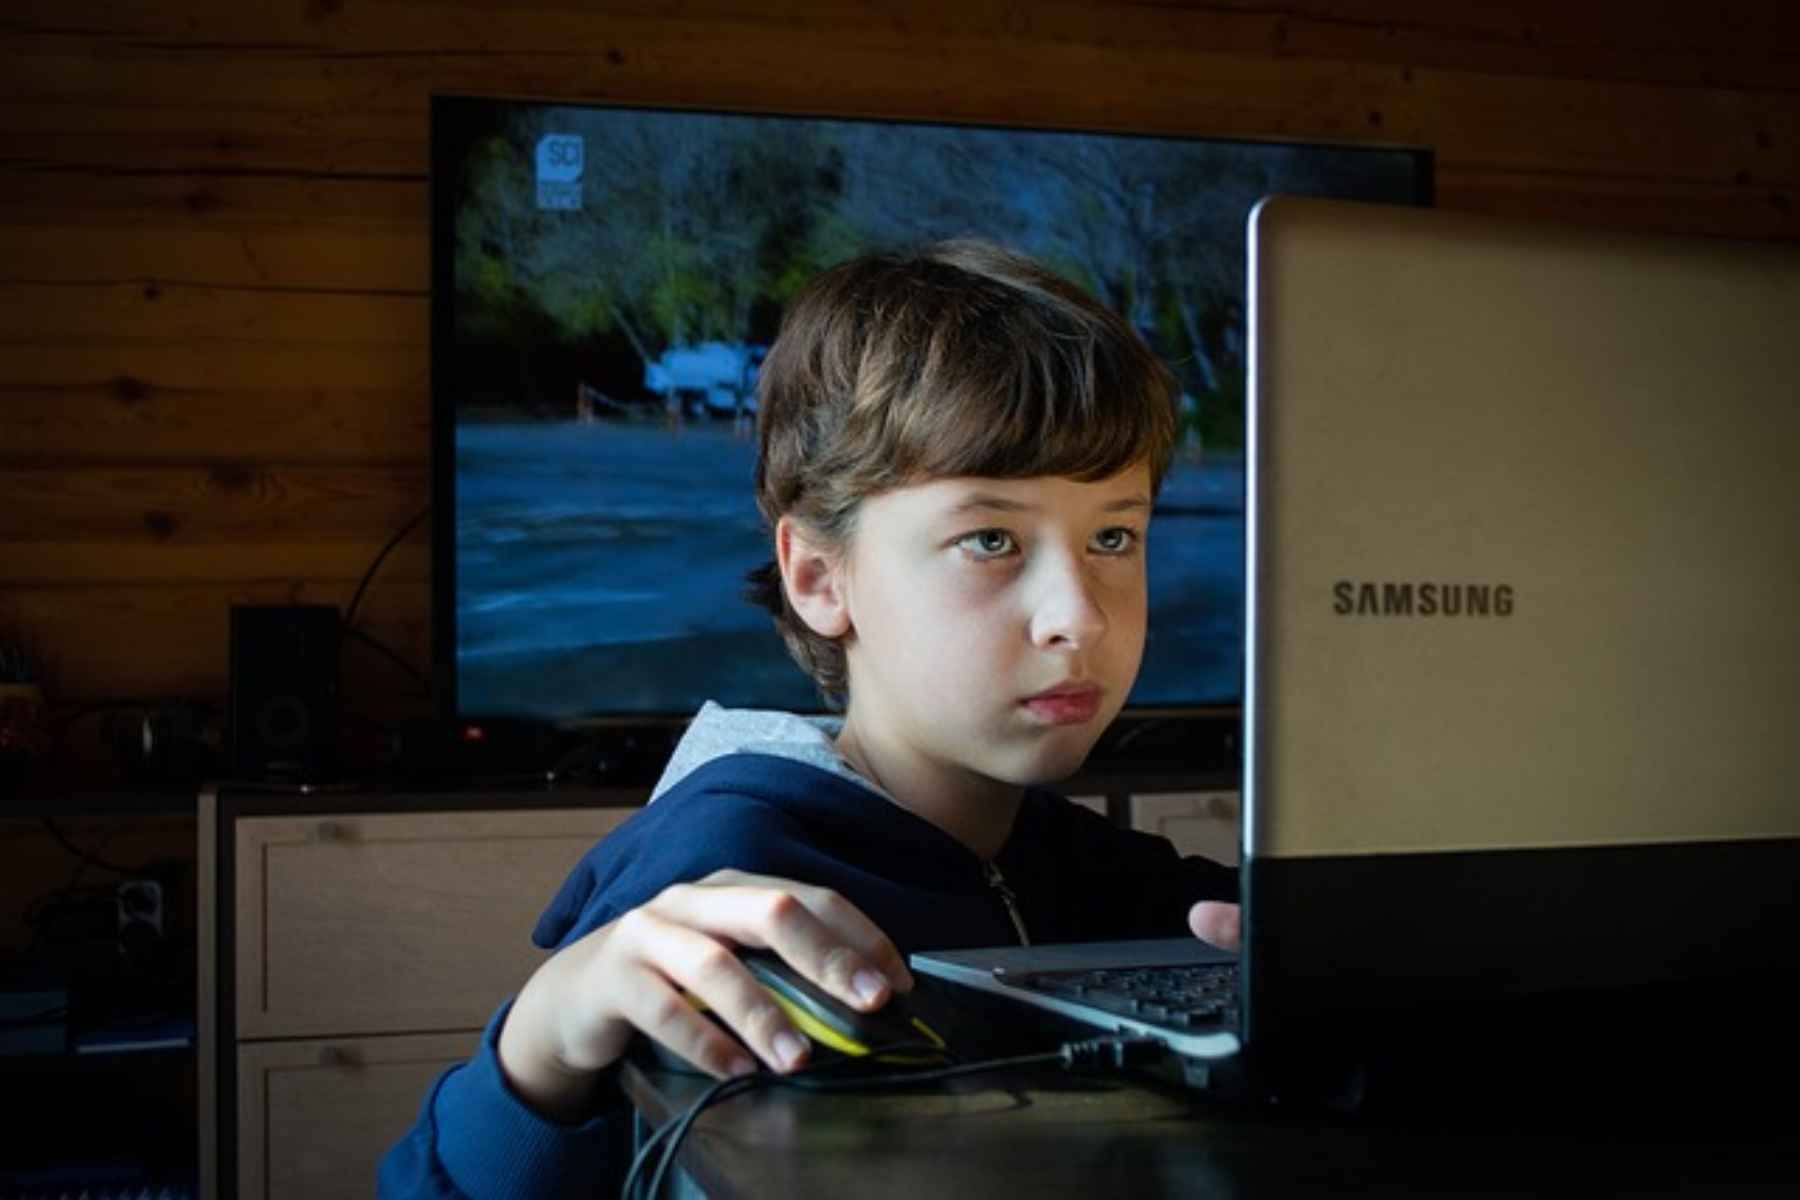 Πώς να κρατάτε τα παιδιά σας ασφαλή ενώ παίζουν online